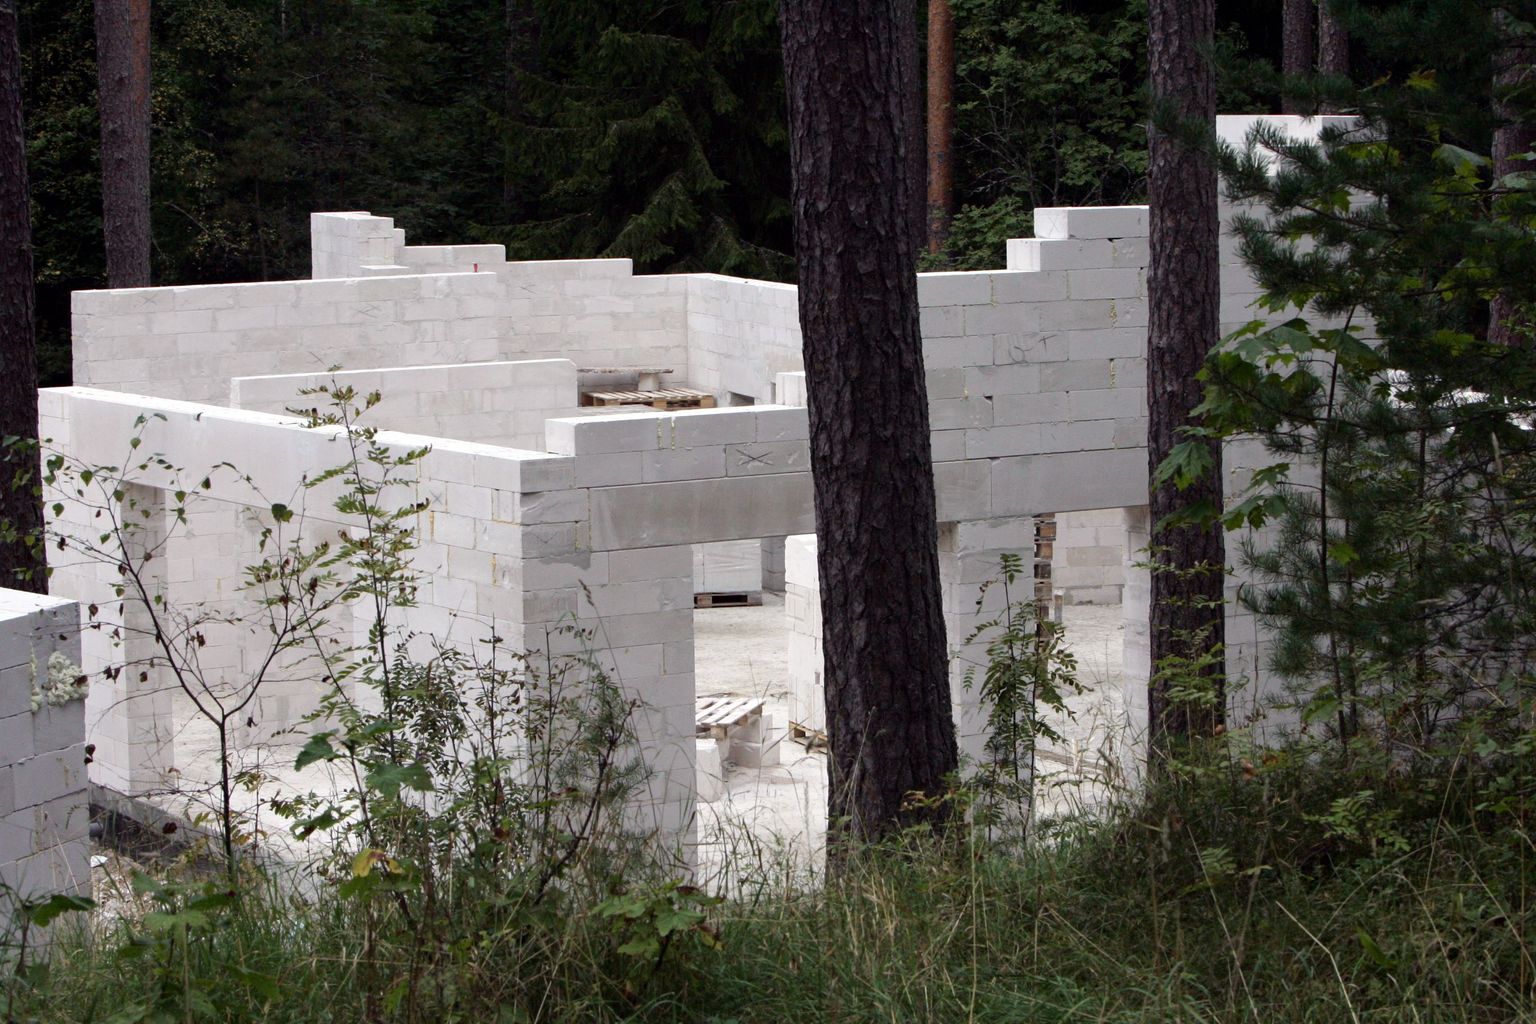 Kuhugi metsatukka loata ehitatud maja on suhteliselt raske avastada.